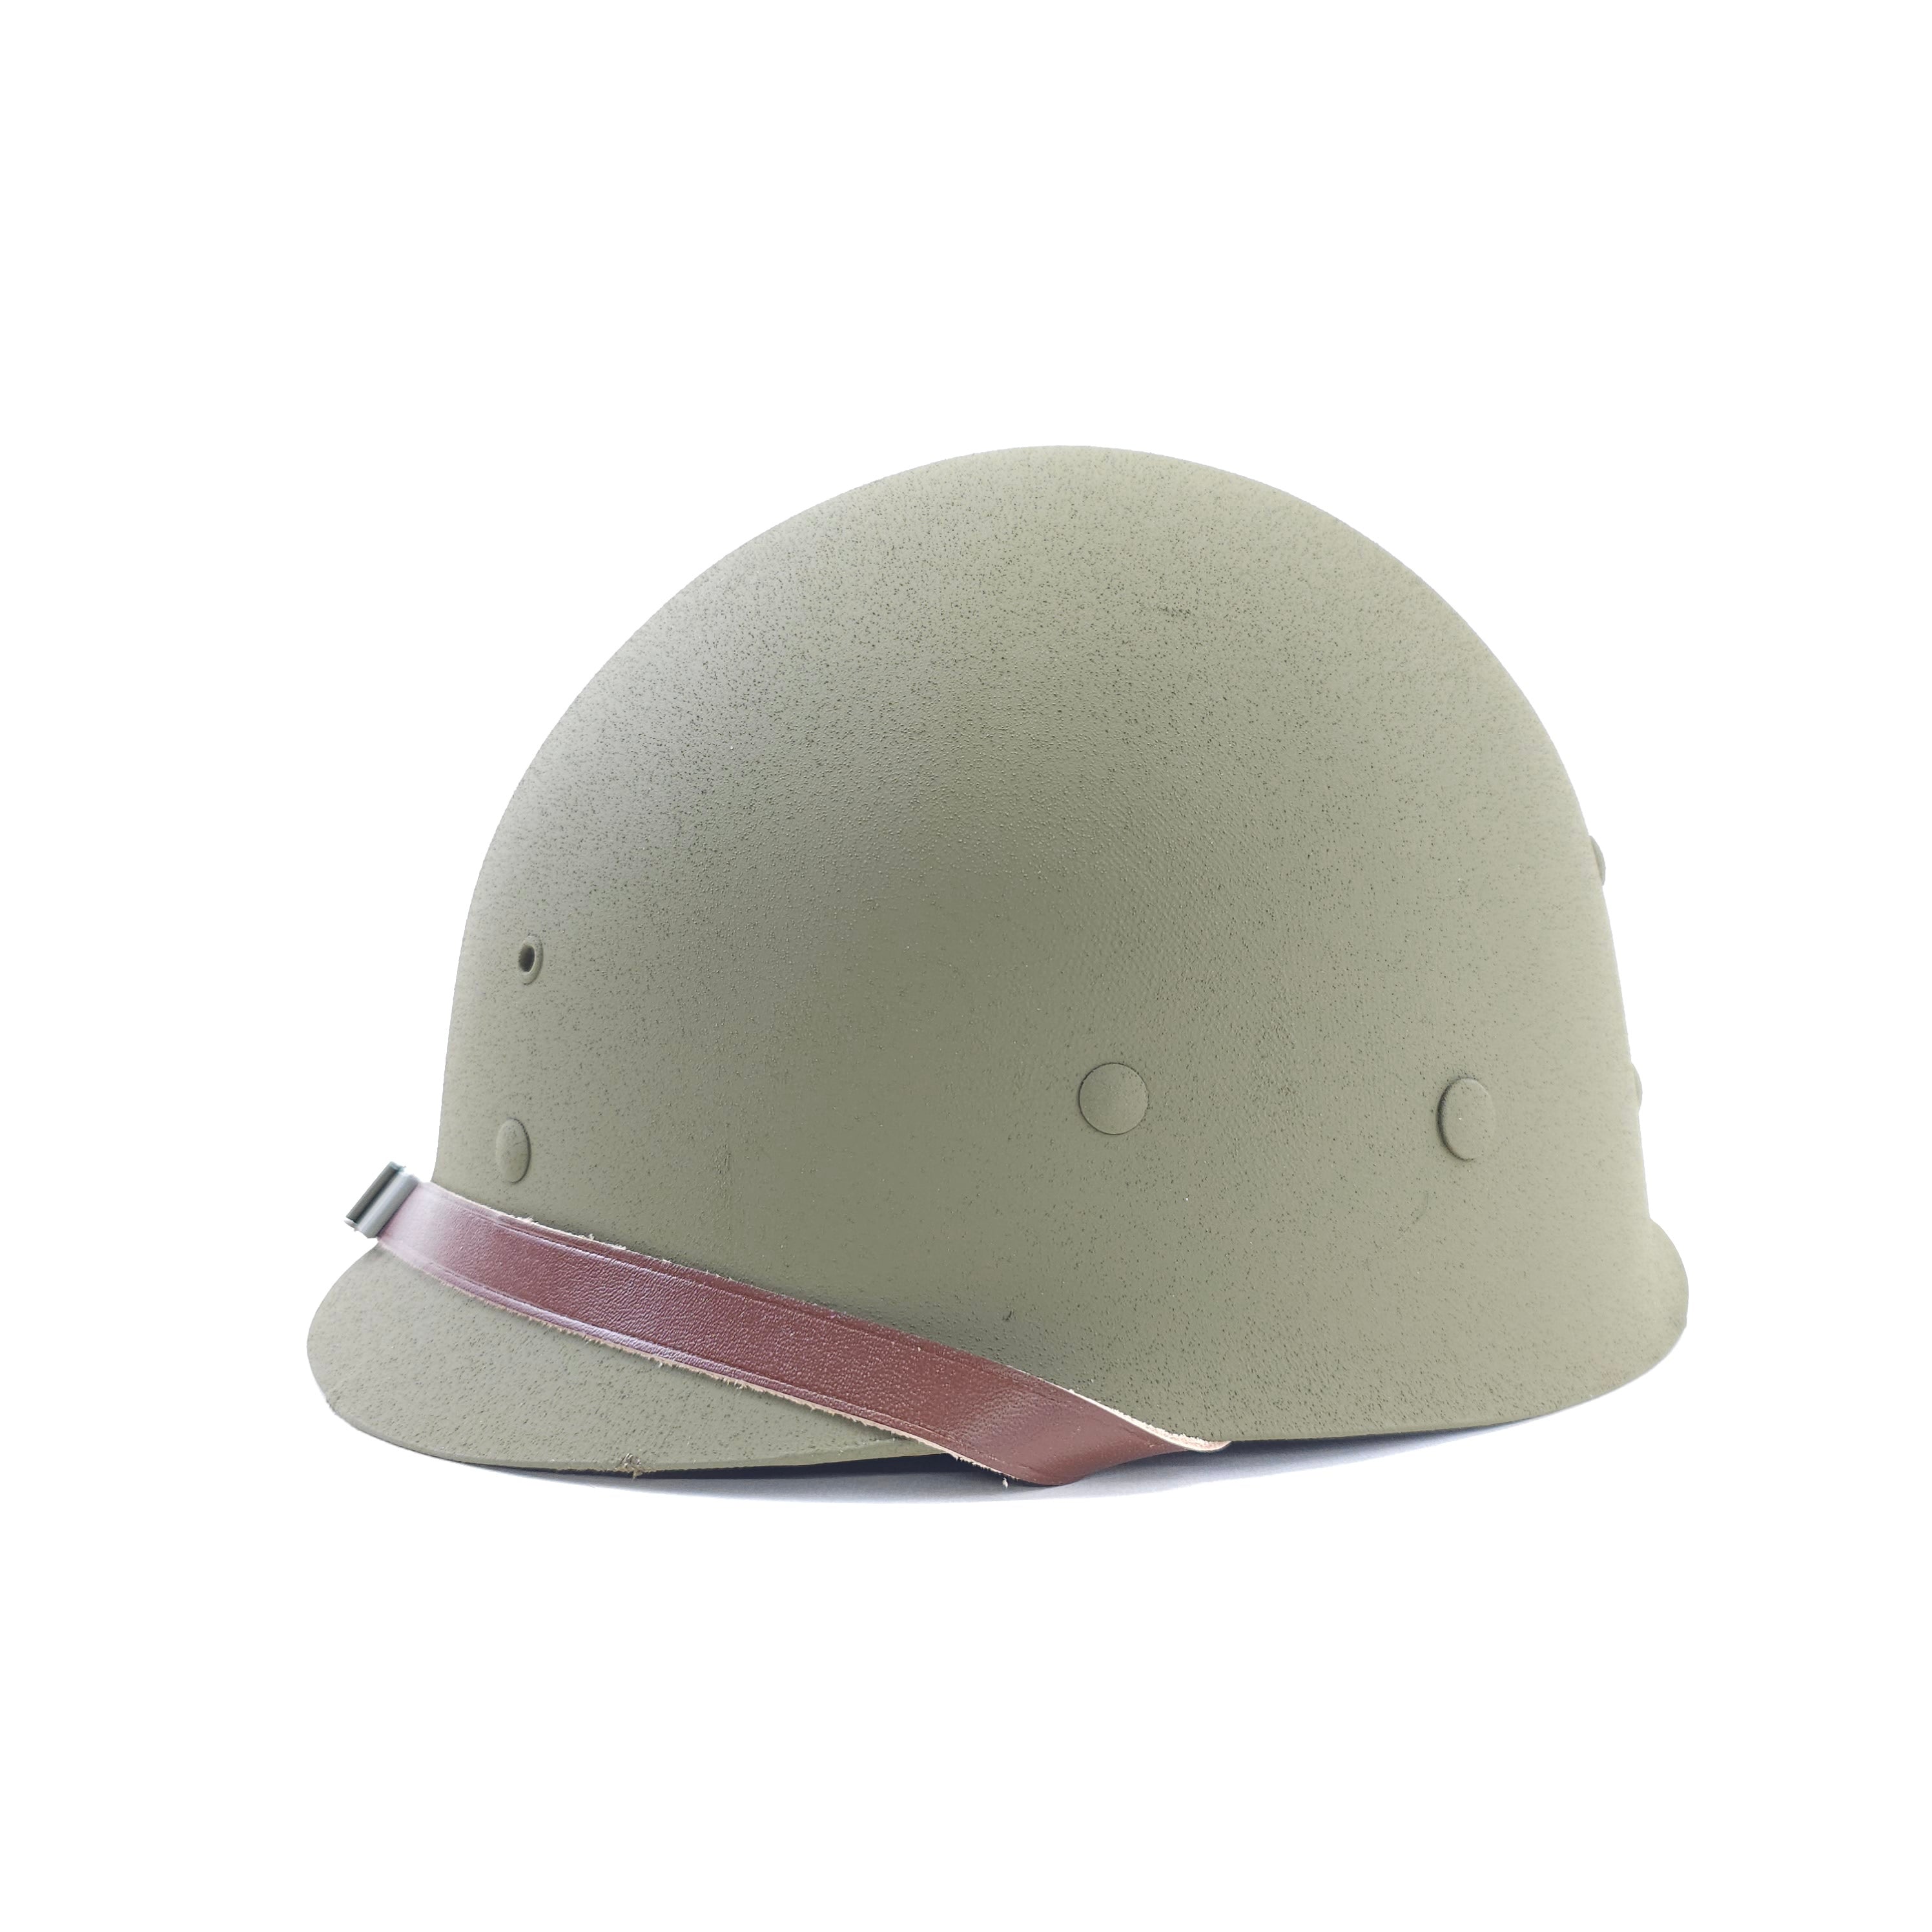 M1 Helmet Liner - Early War